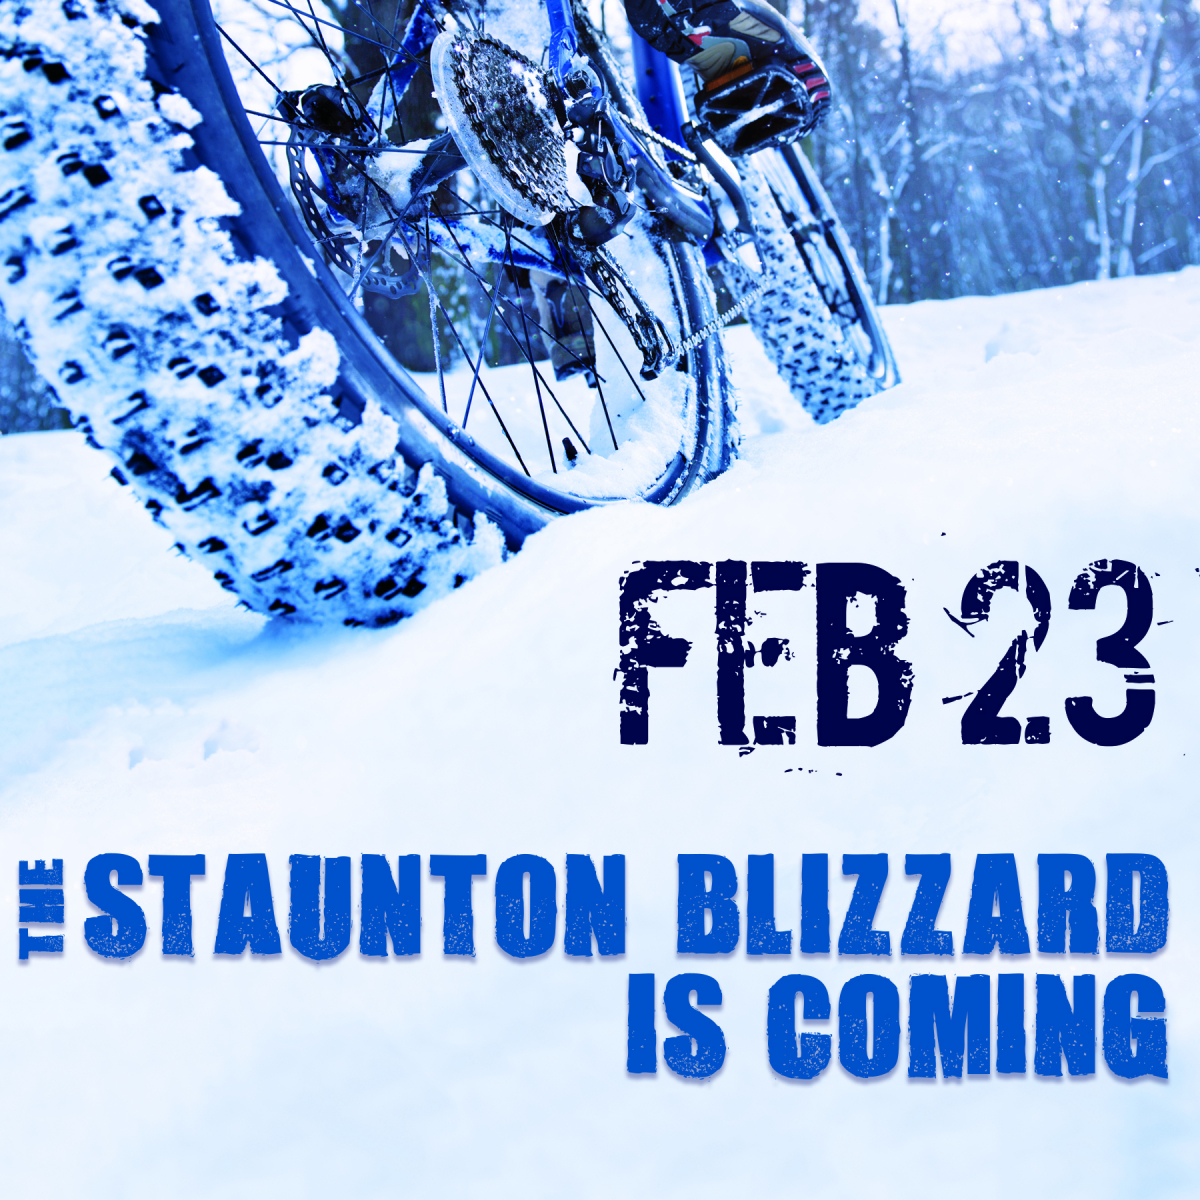 Staunton Blizzard